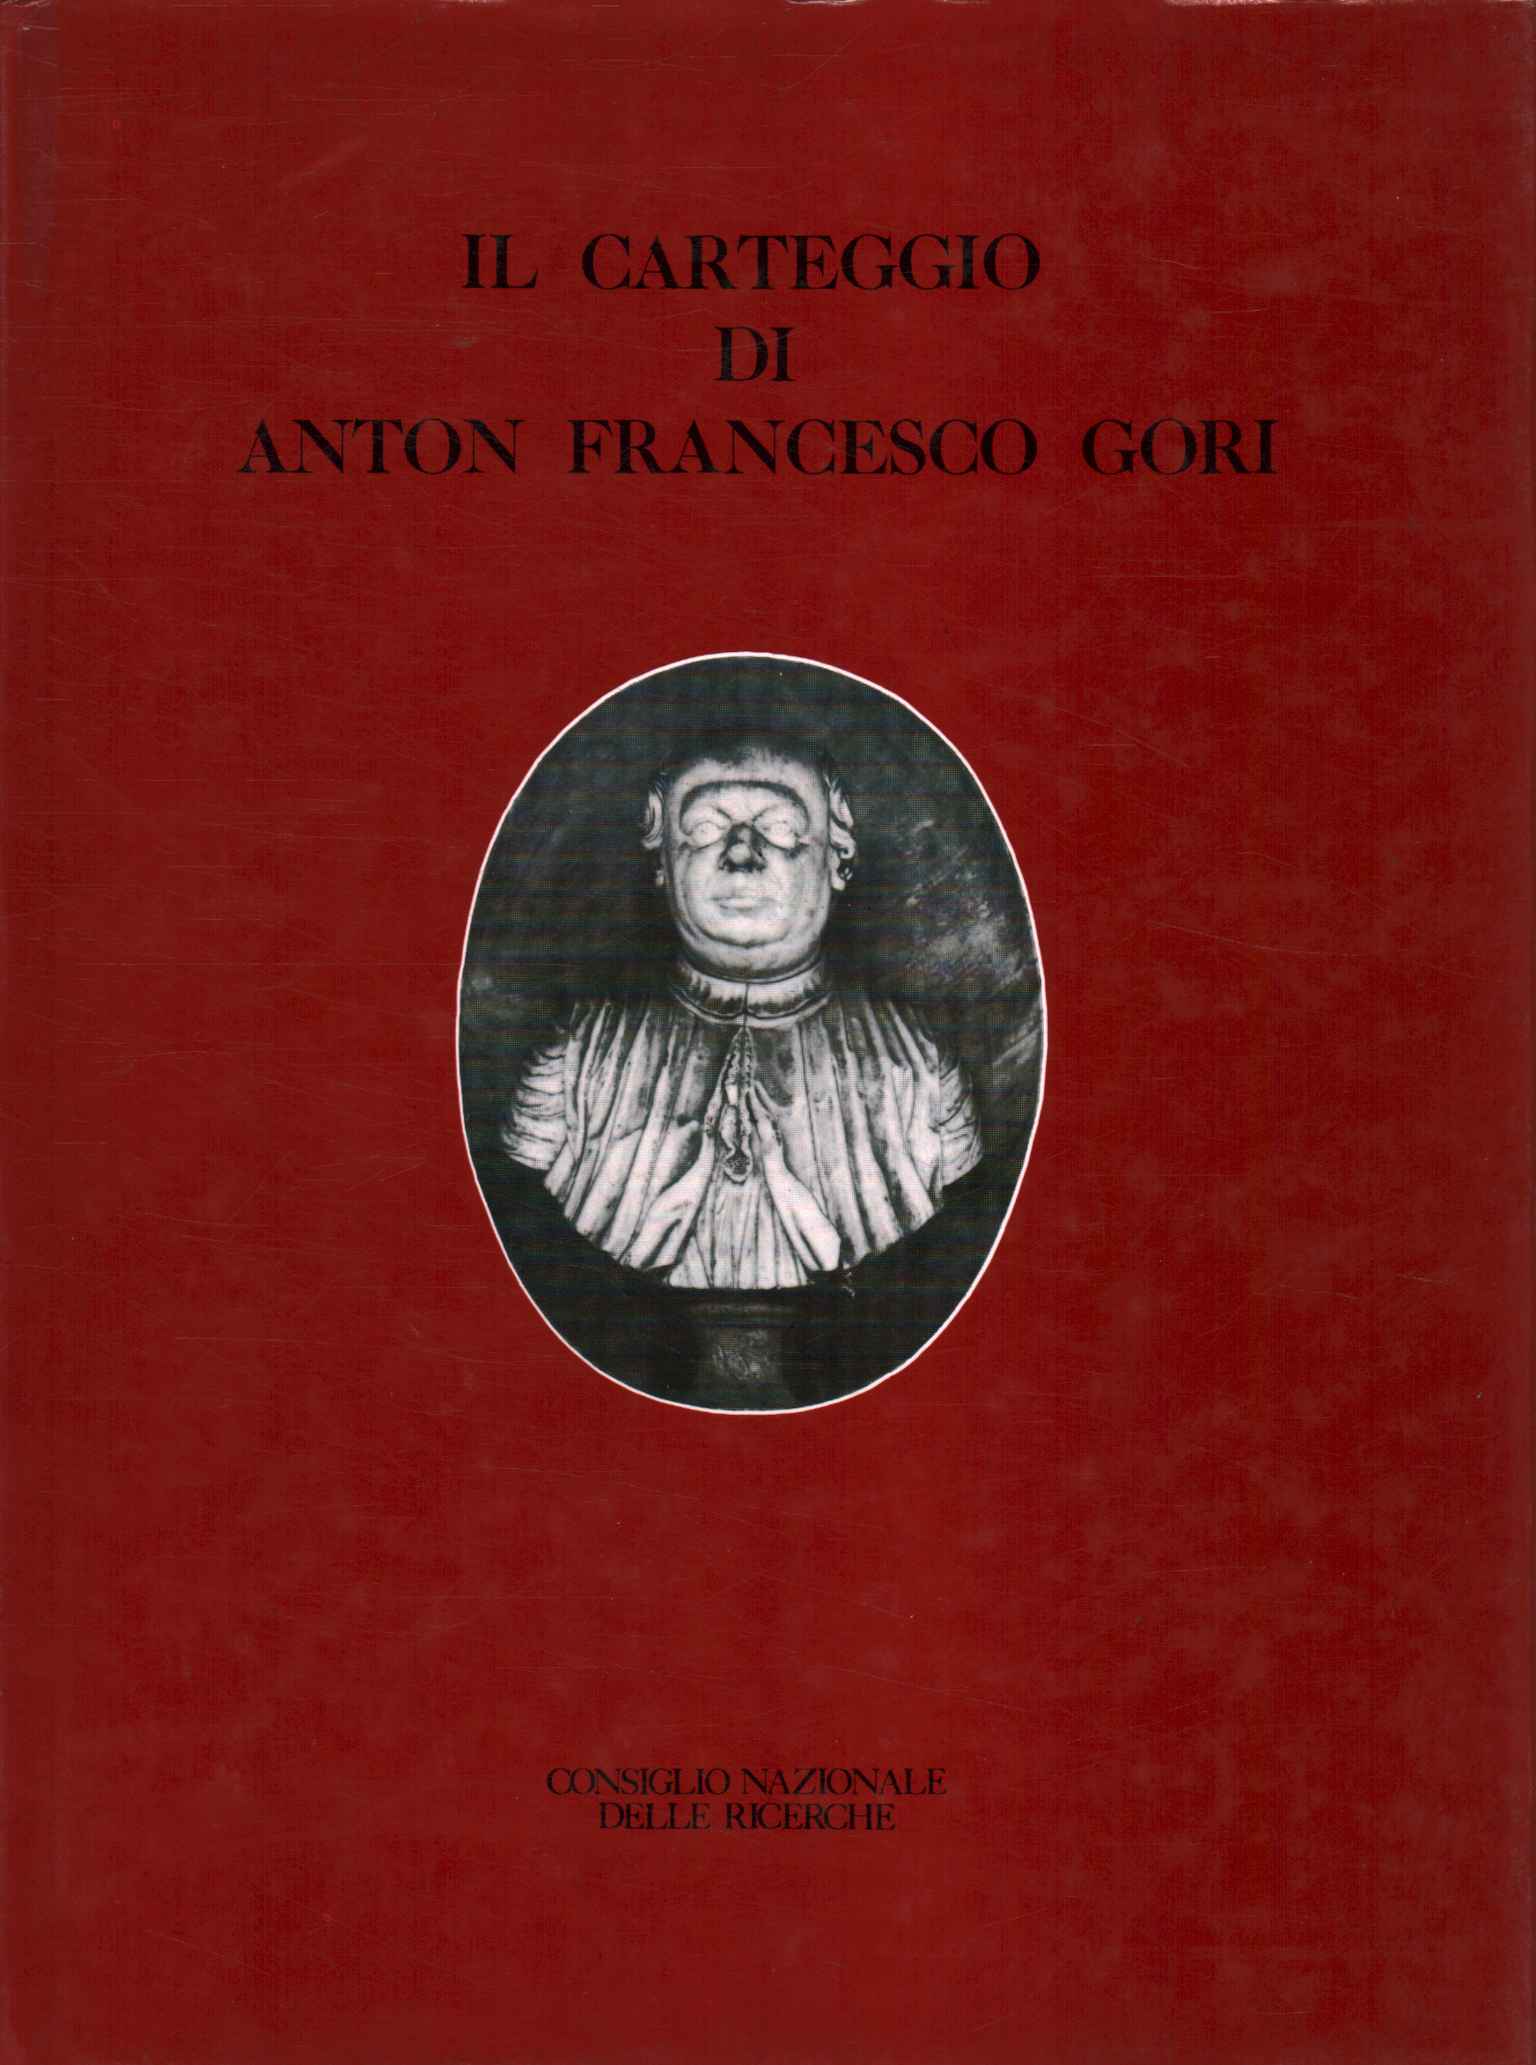 La correspondance d'Anton Francesco Gori